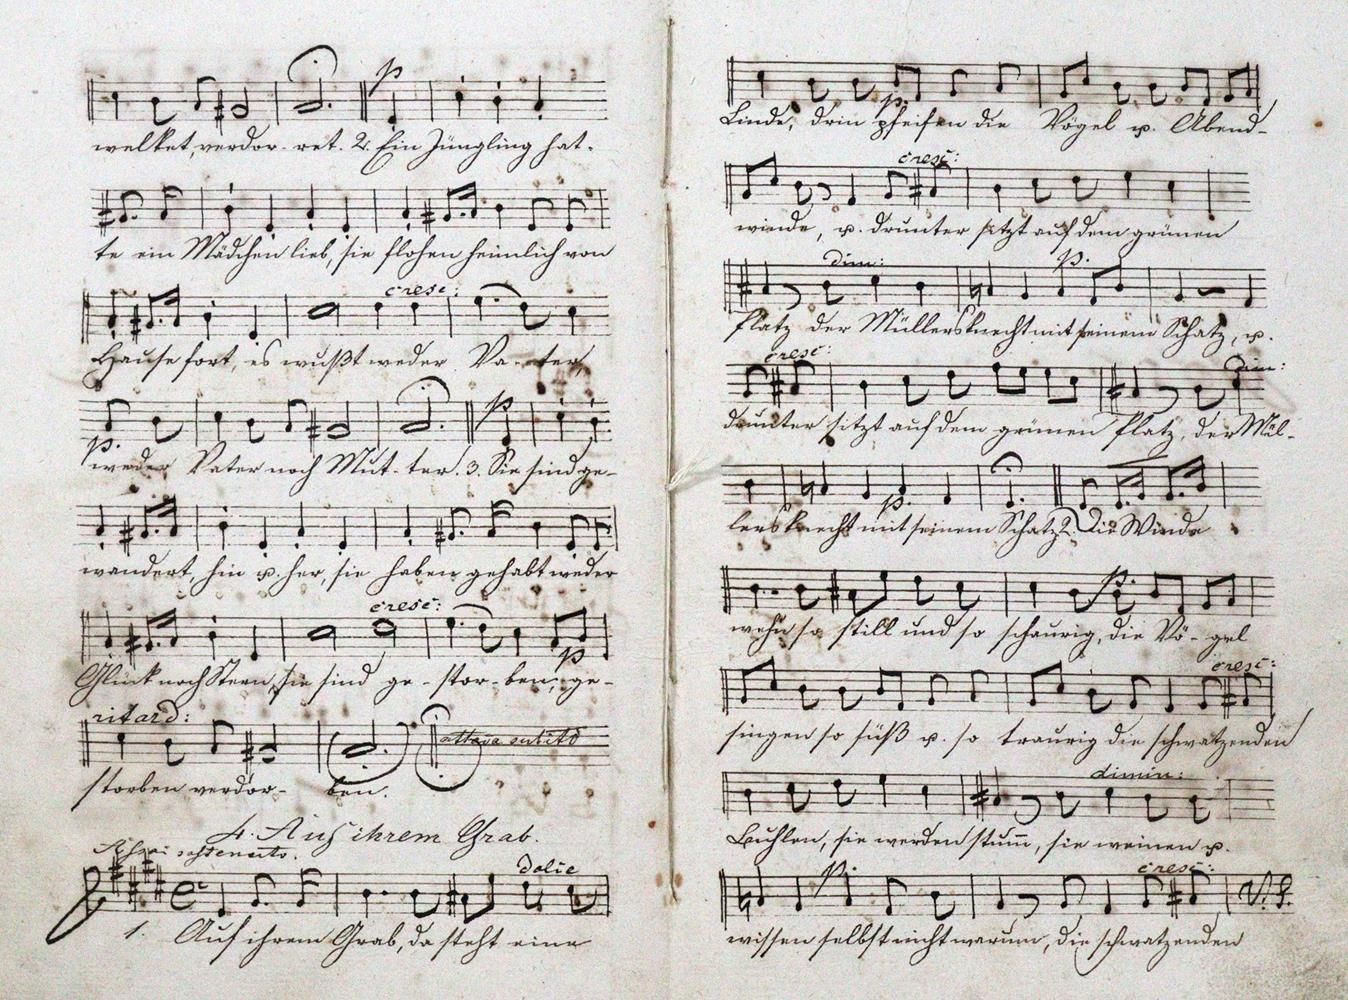 Papst,W. Canciones para soprano, contralto, tenor y bajo, compuestas por Felix M&hellip;